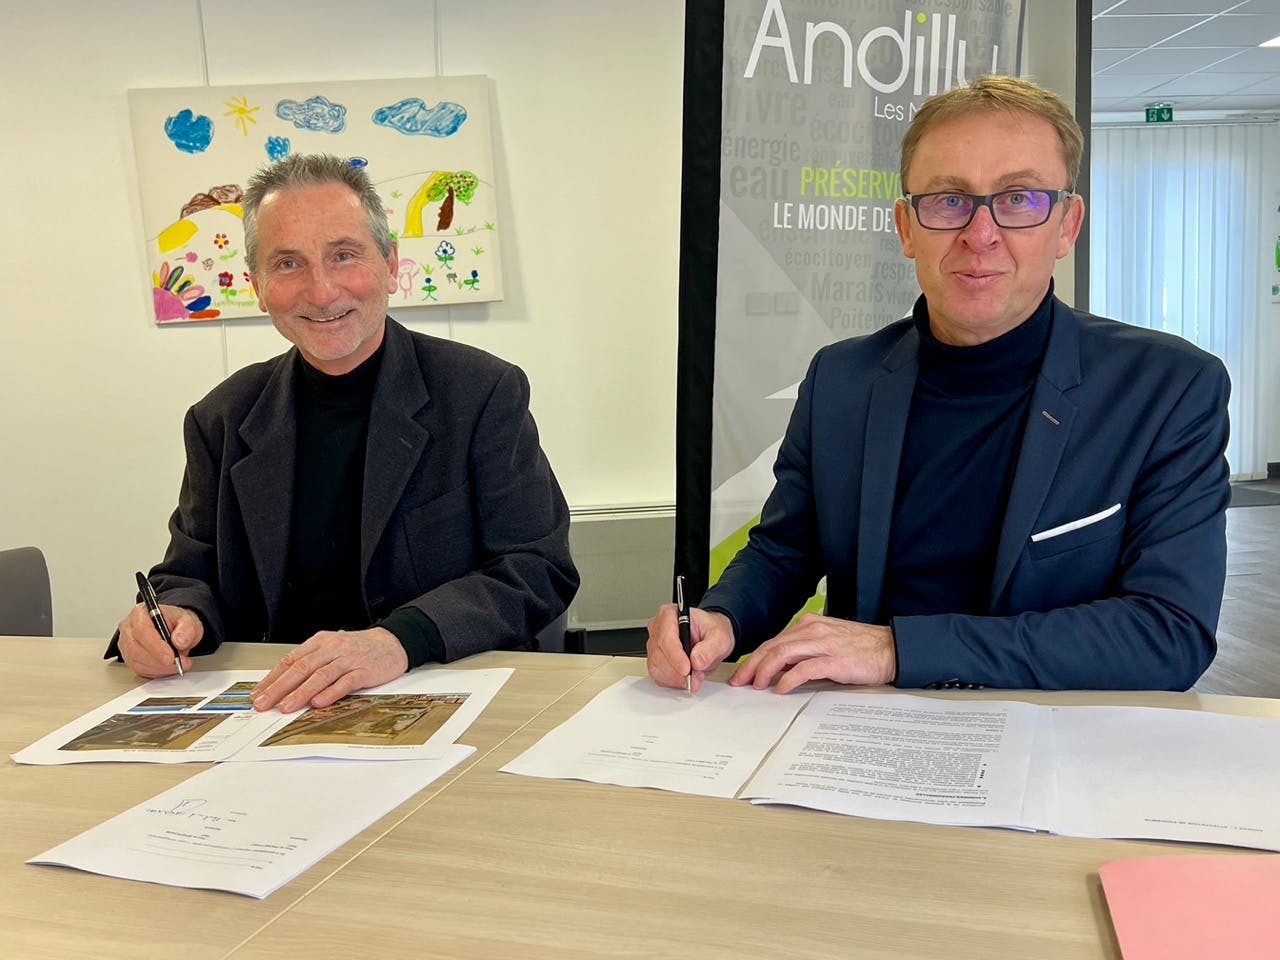 Signature de la promesse de bail pour le parc solaire d'Andilly, à droite Sylvain FAGOT (maire d'Andilly) et à gauche Bertrand CARDINAL (président de la COOPEC)